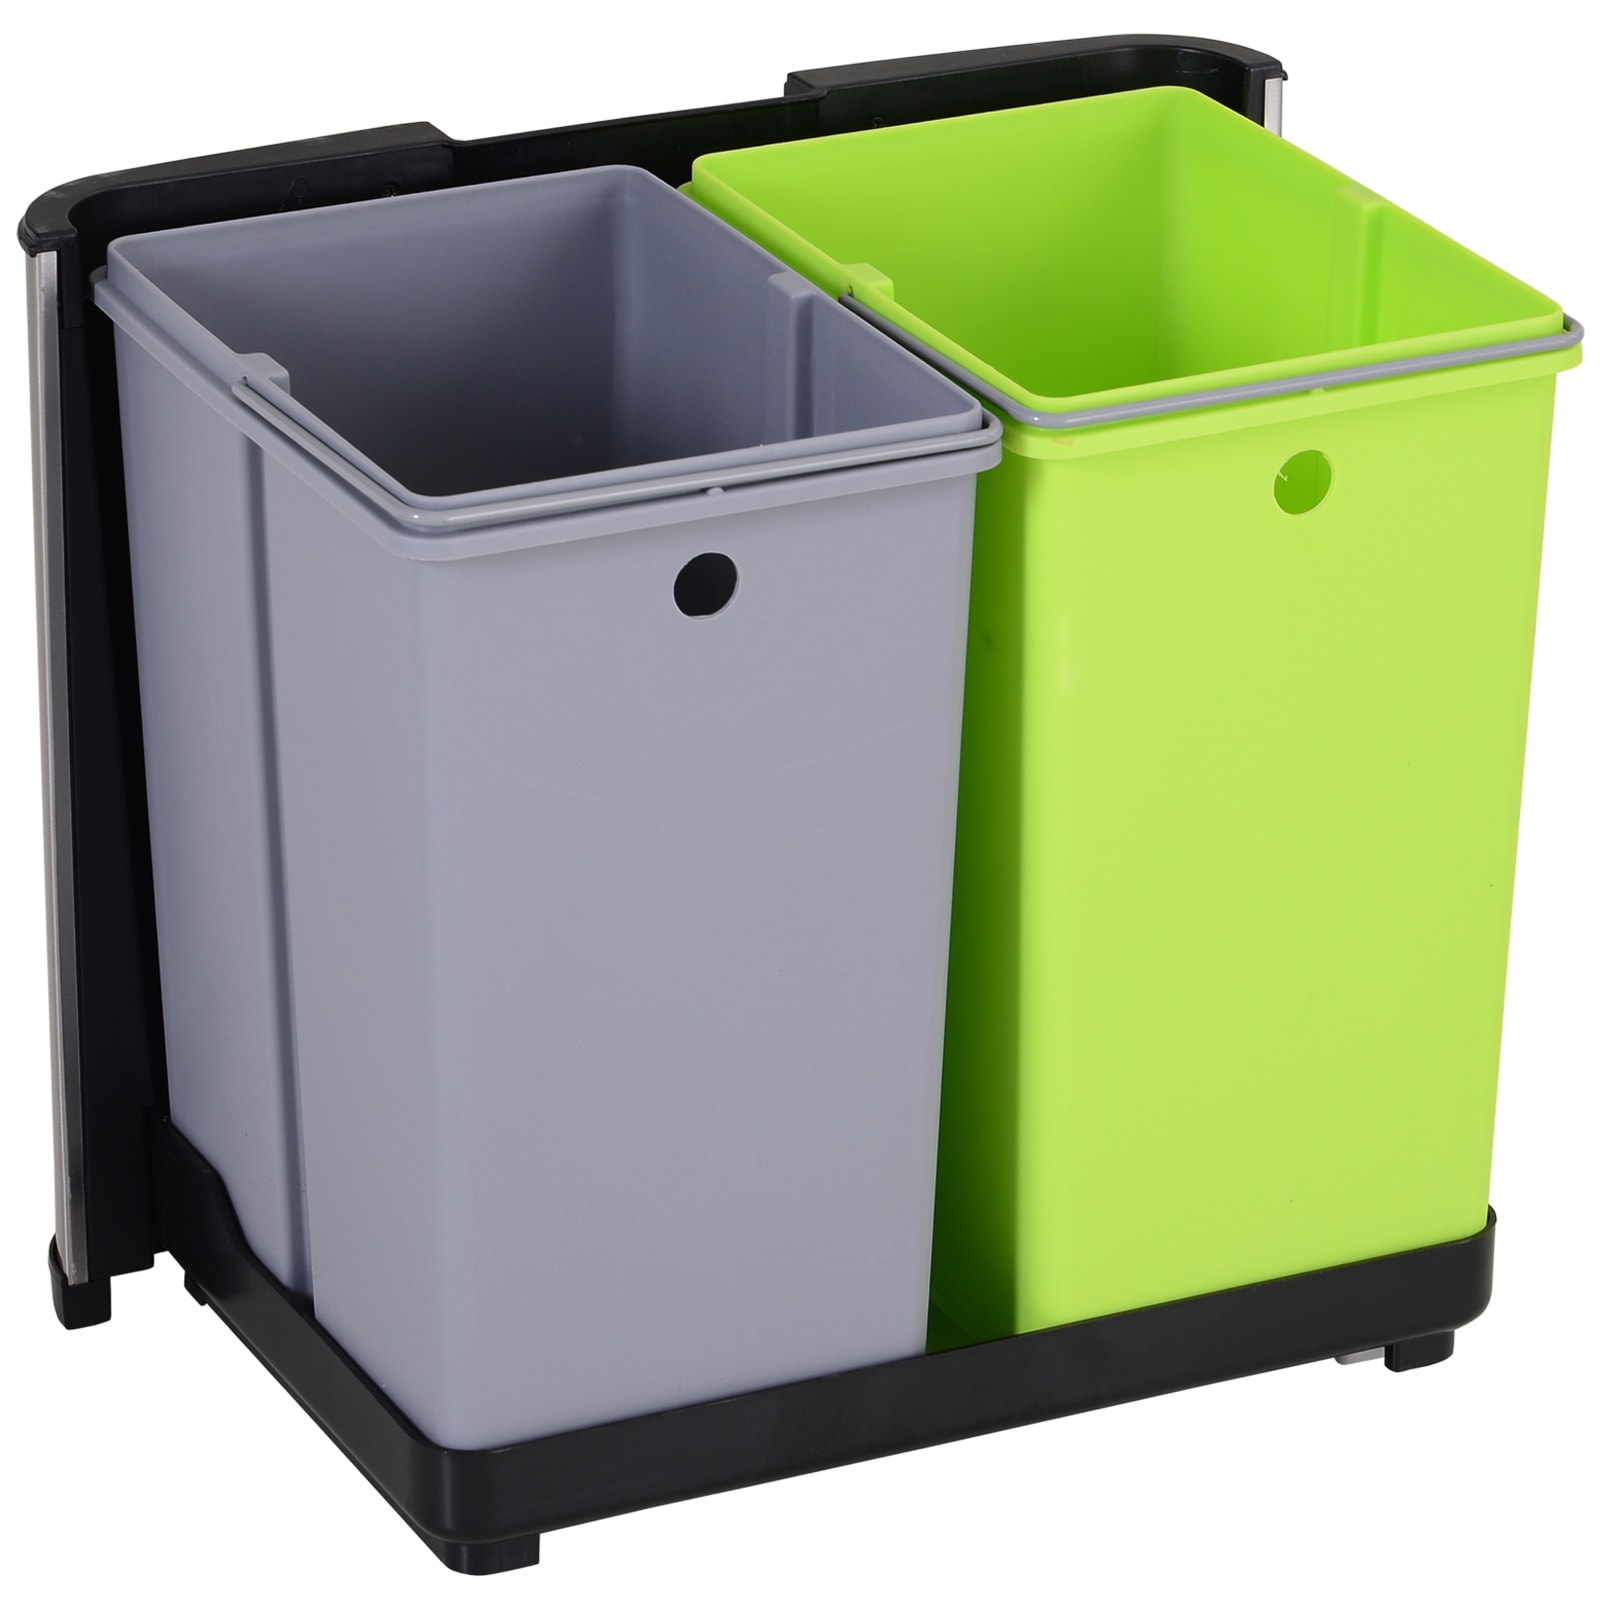  vidaXL Cubo de basura triple para patio al aire libre, para  reciclaje, para jardín, 81.5 x 31.5 x 46.1 in, color gris : Patio, Césped y  Jardín